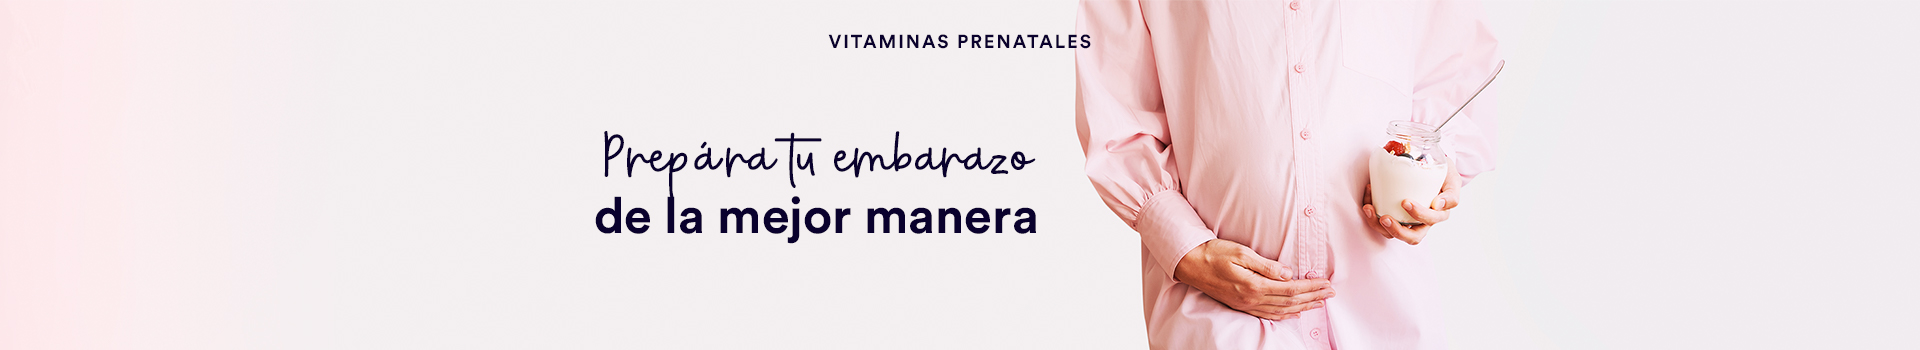 Vitaminas prenatales_sección búsqueda producto